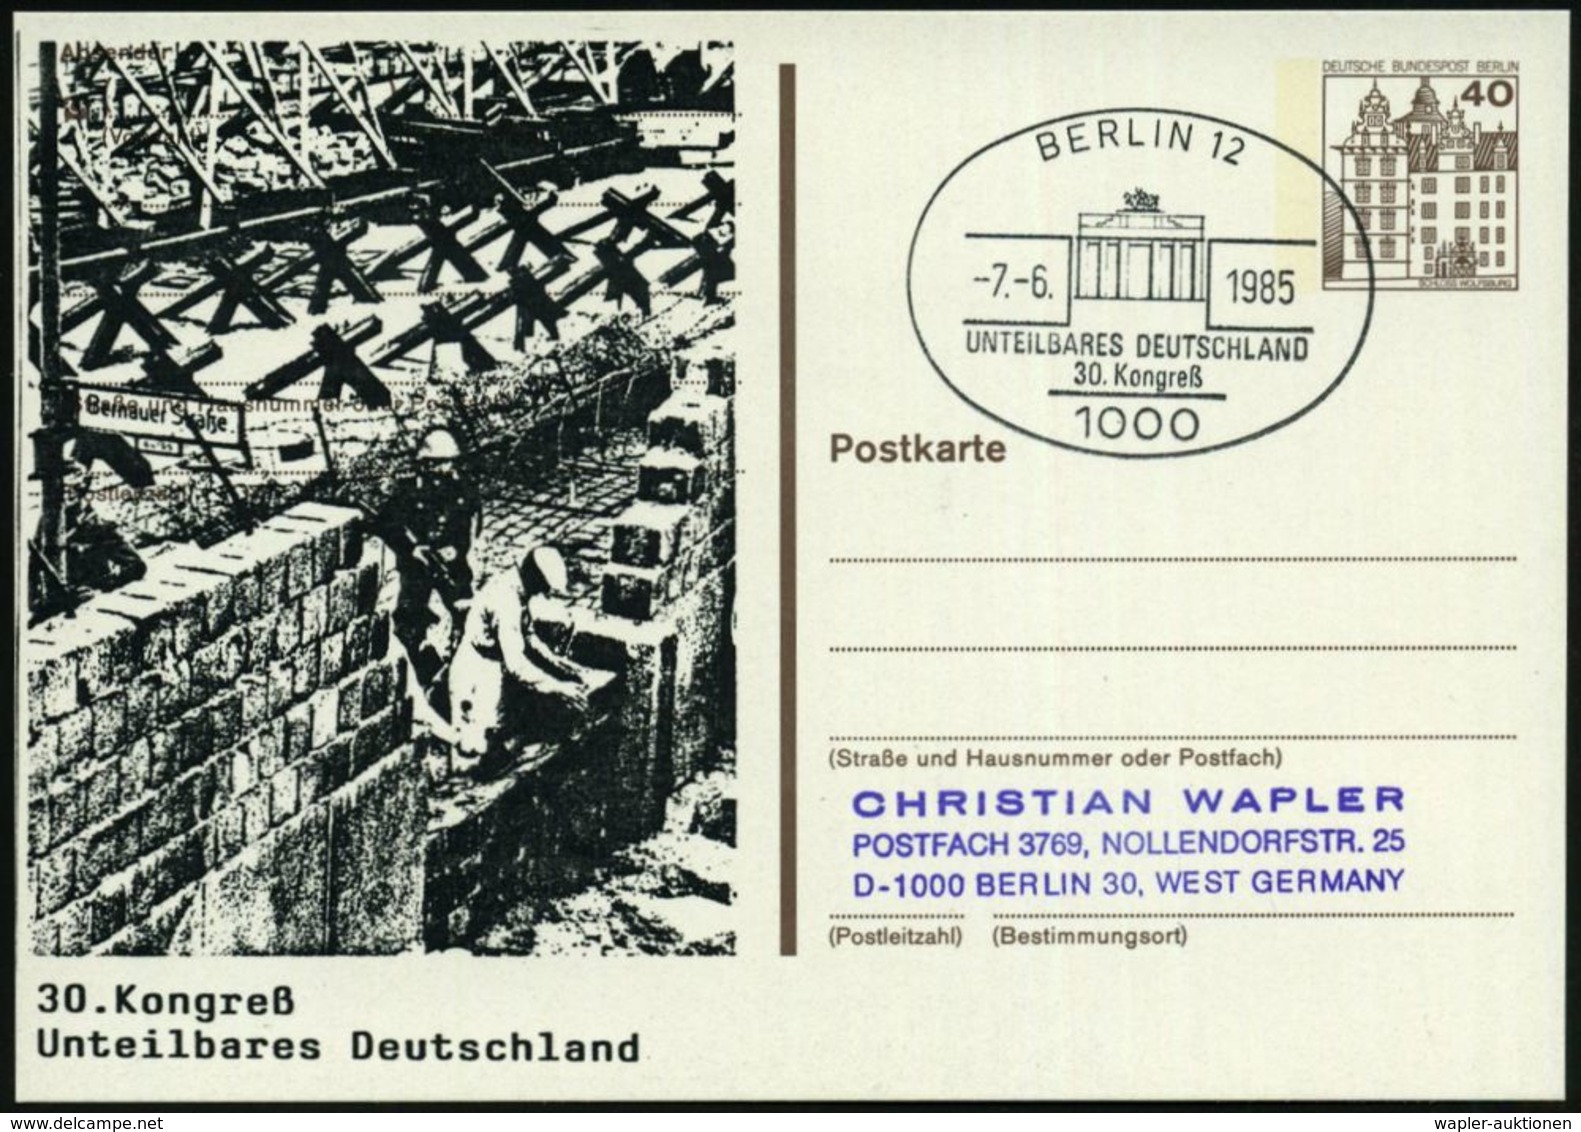 1000 BERLIN 12/ UNTEILBARES DEUTSCHLAND/ 30.Kongreß 1985 (7.6.) SSt = Brandenbg. Tor Auf Orts-P 40 Pf. + Zudruck: Mauerb - Denkmäler